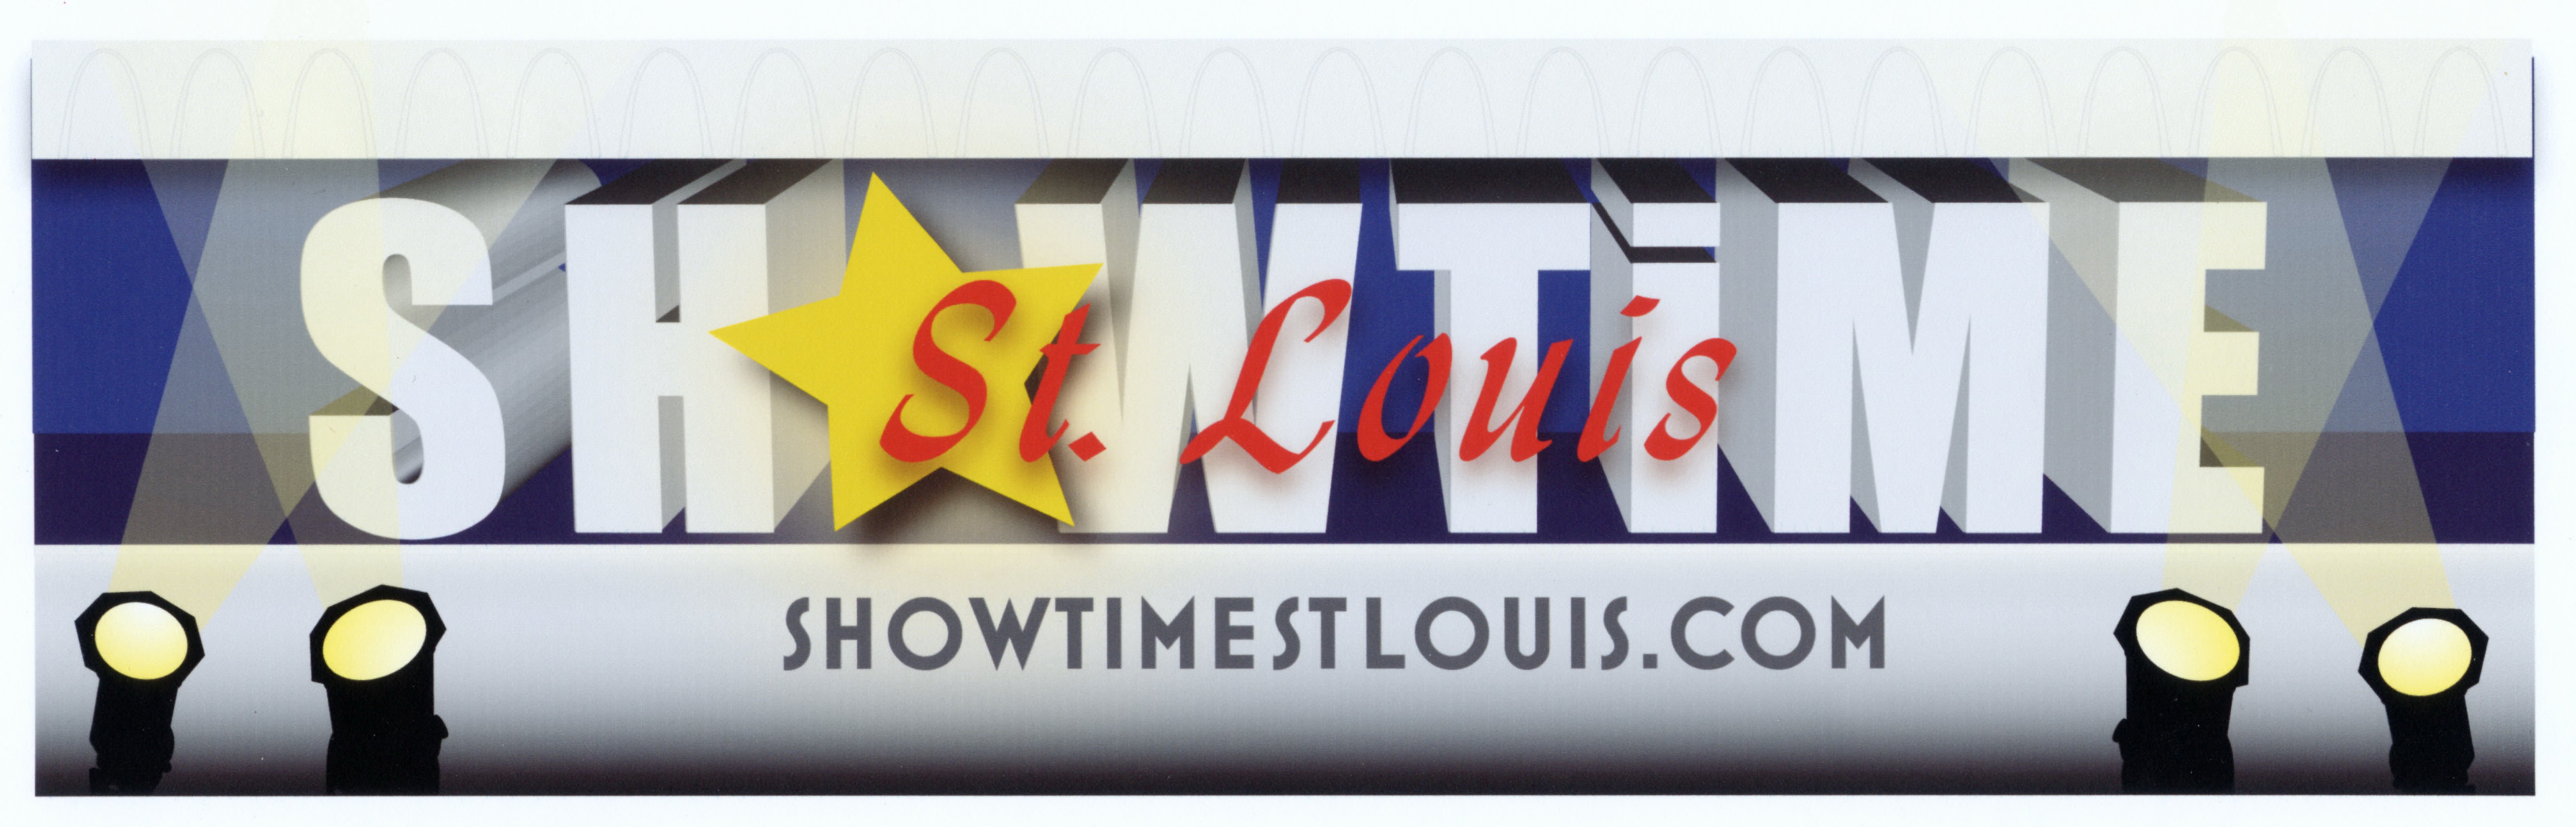  SHOWTIME ST. LOUIS SHOWTIMESTLOUIS.COM